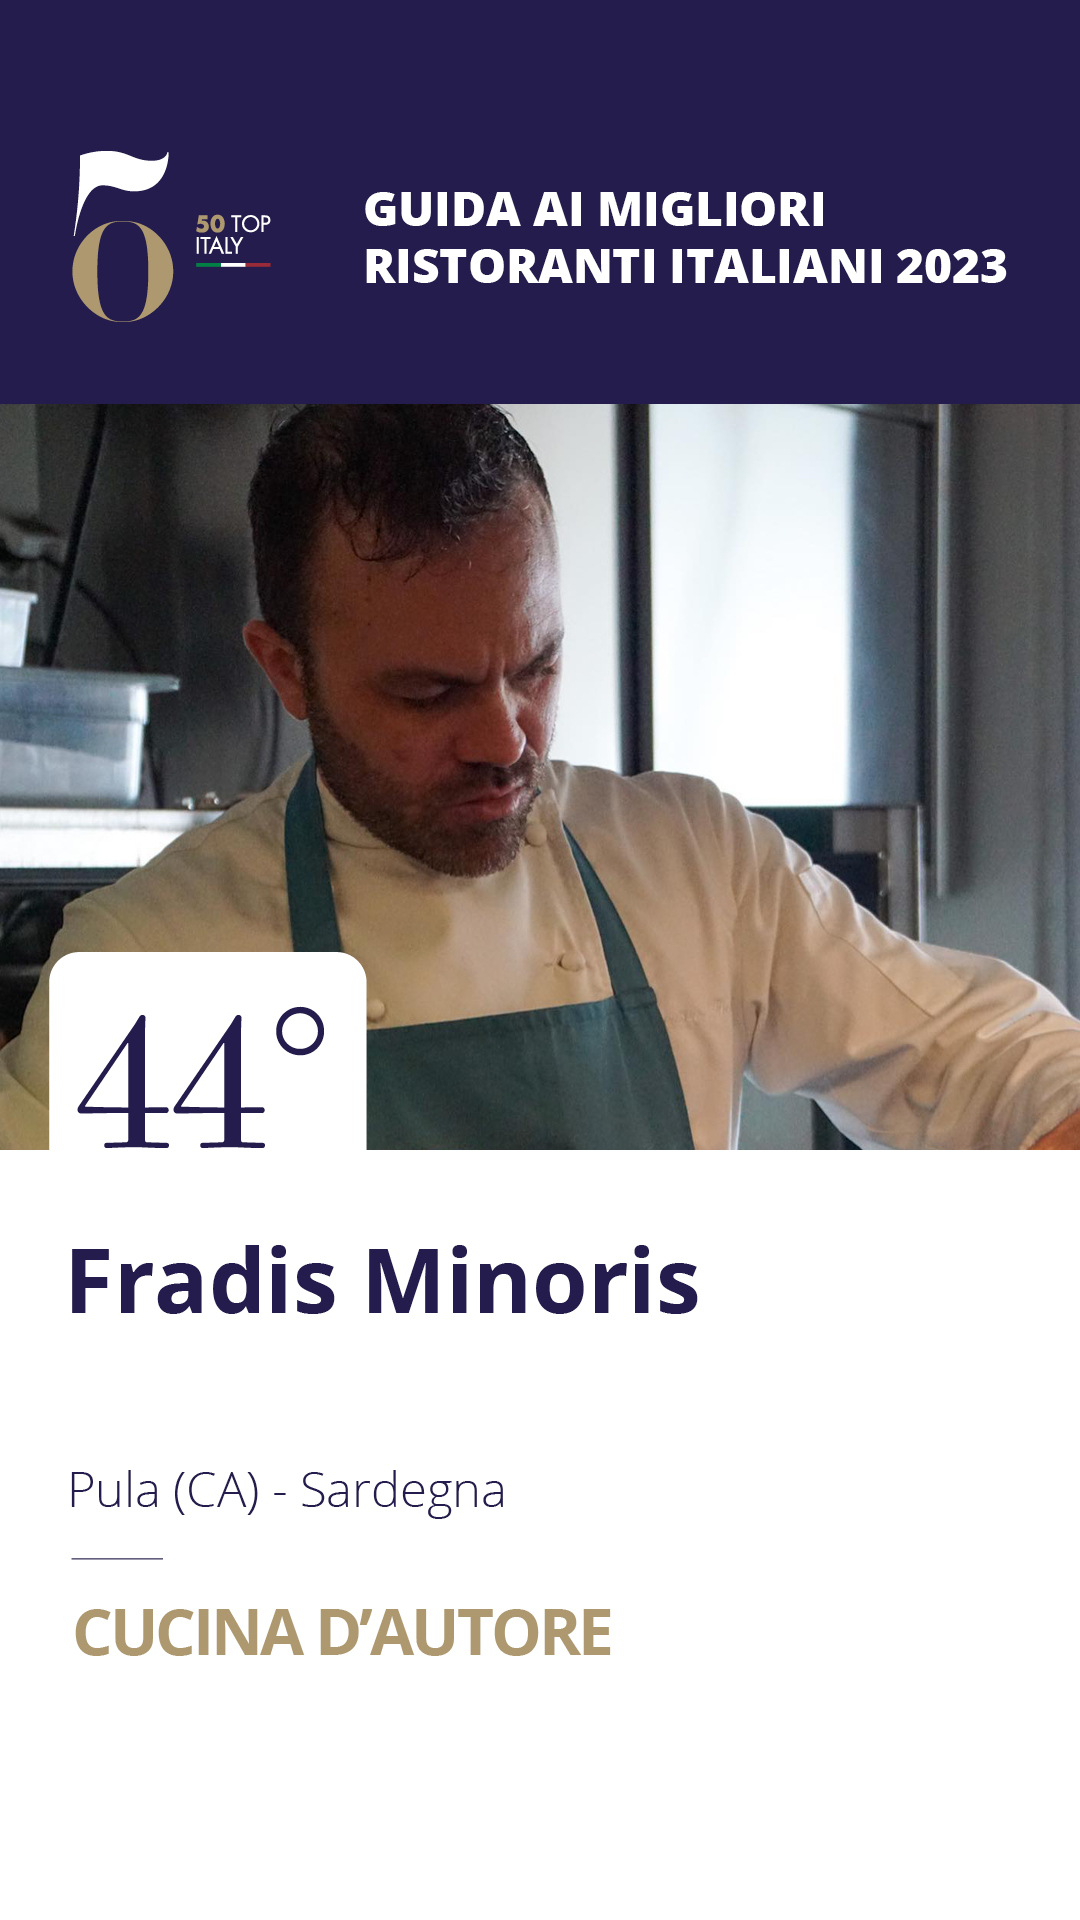 44 - Fradis Minoris